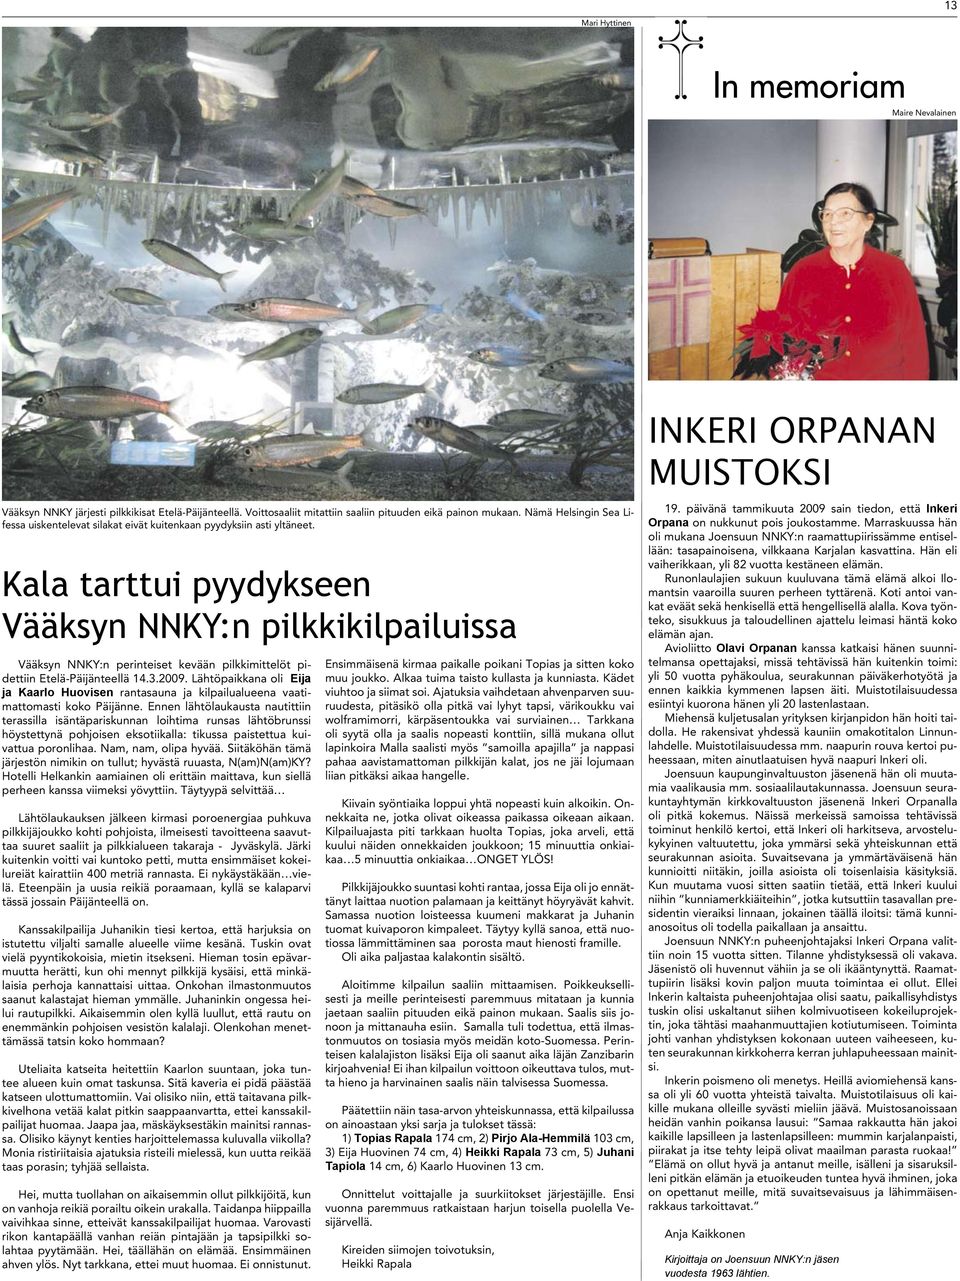 Kala tarttui pyydykseen Vääksyn NNKY:n pilkkikilpailuissa Vääksyn NNKY:n perinteiset kevään pilkkimittelöt pidettiin Etelä-Päijänteellä 14.3.2009.